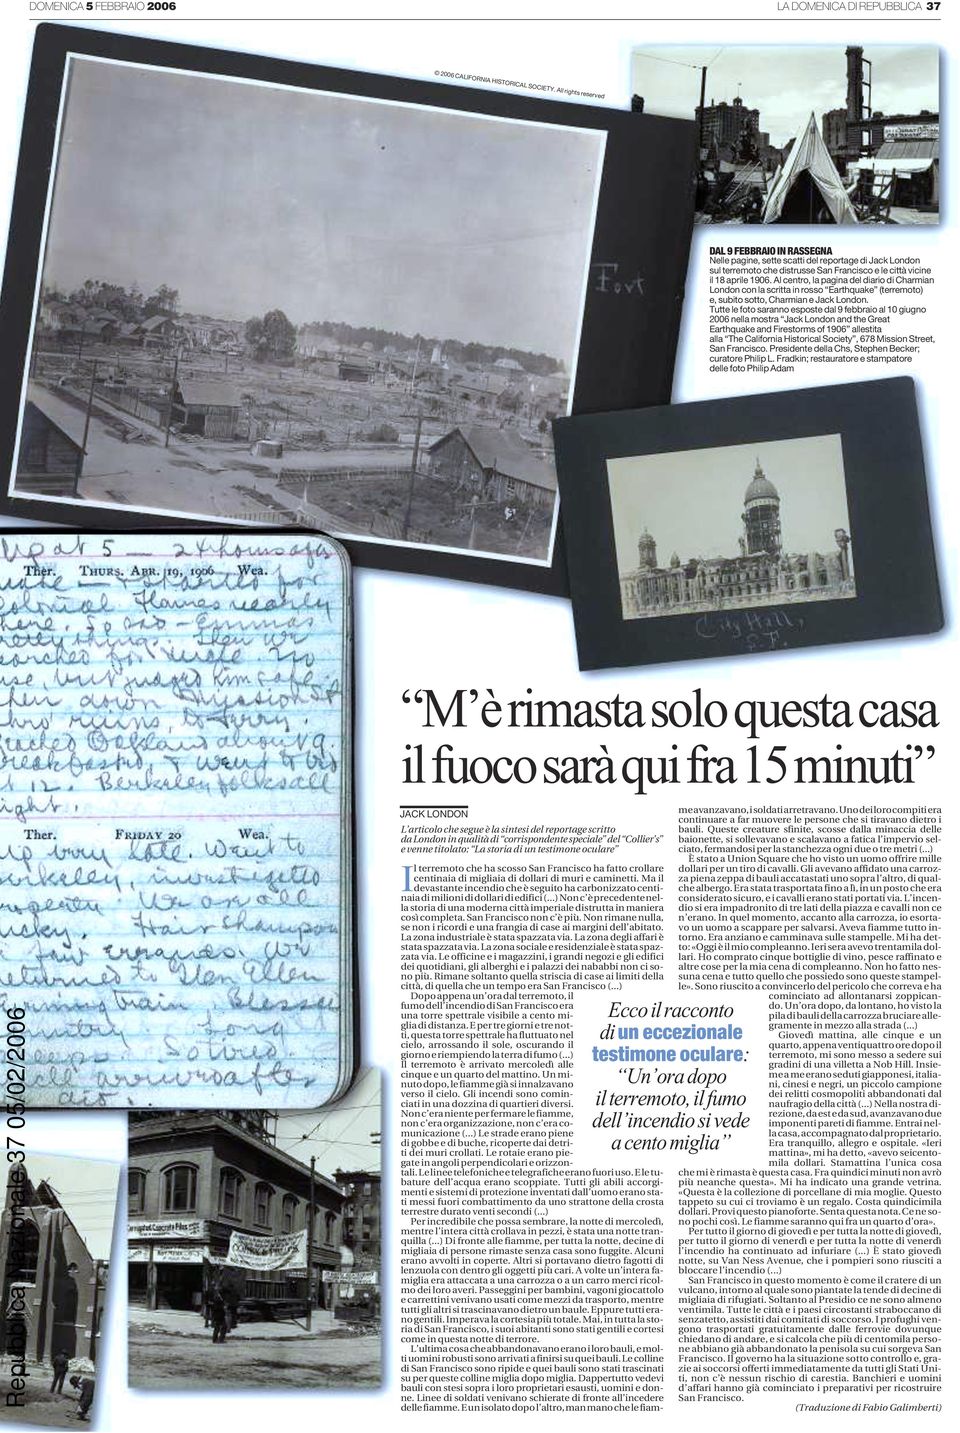 Al centro, la pagina del diario di Charmian London con la scritta in rosso Earthquake (terremoto) e, subito sotto, Charmian e Jack London.